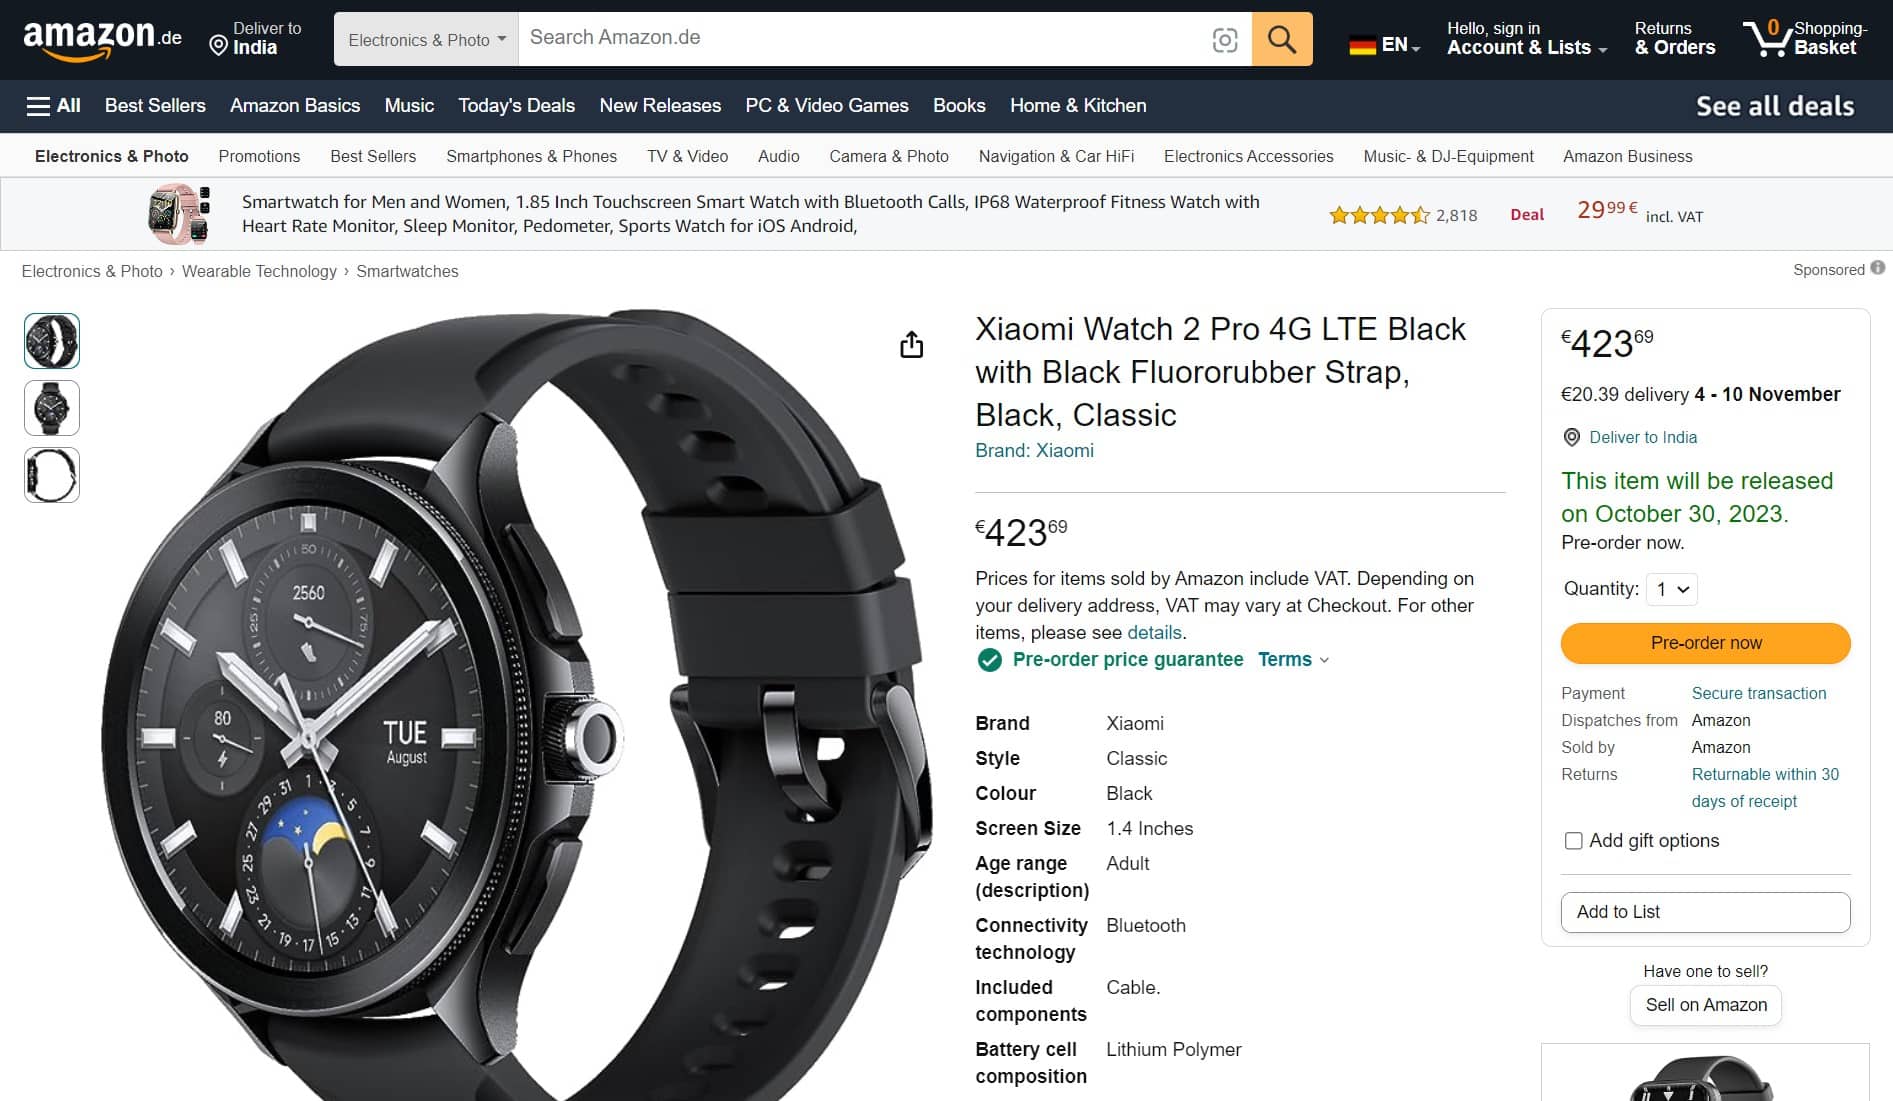 Xiaomi Watch 2 Pro Amazon Listing